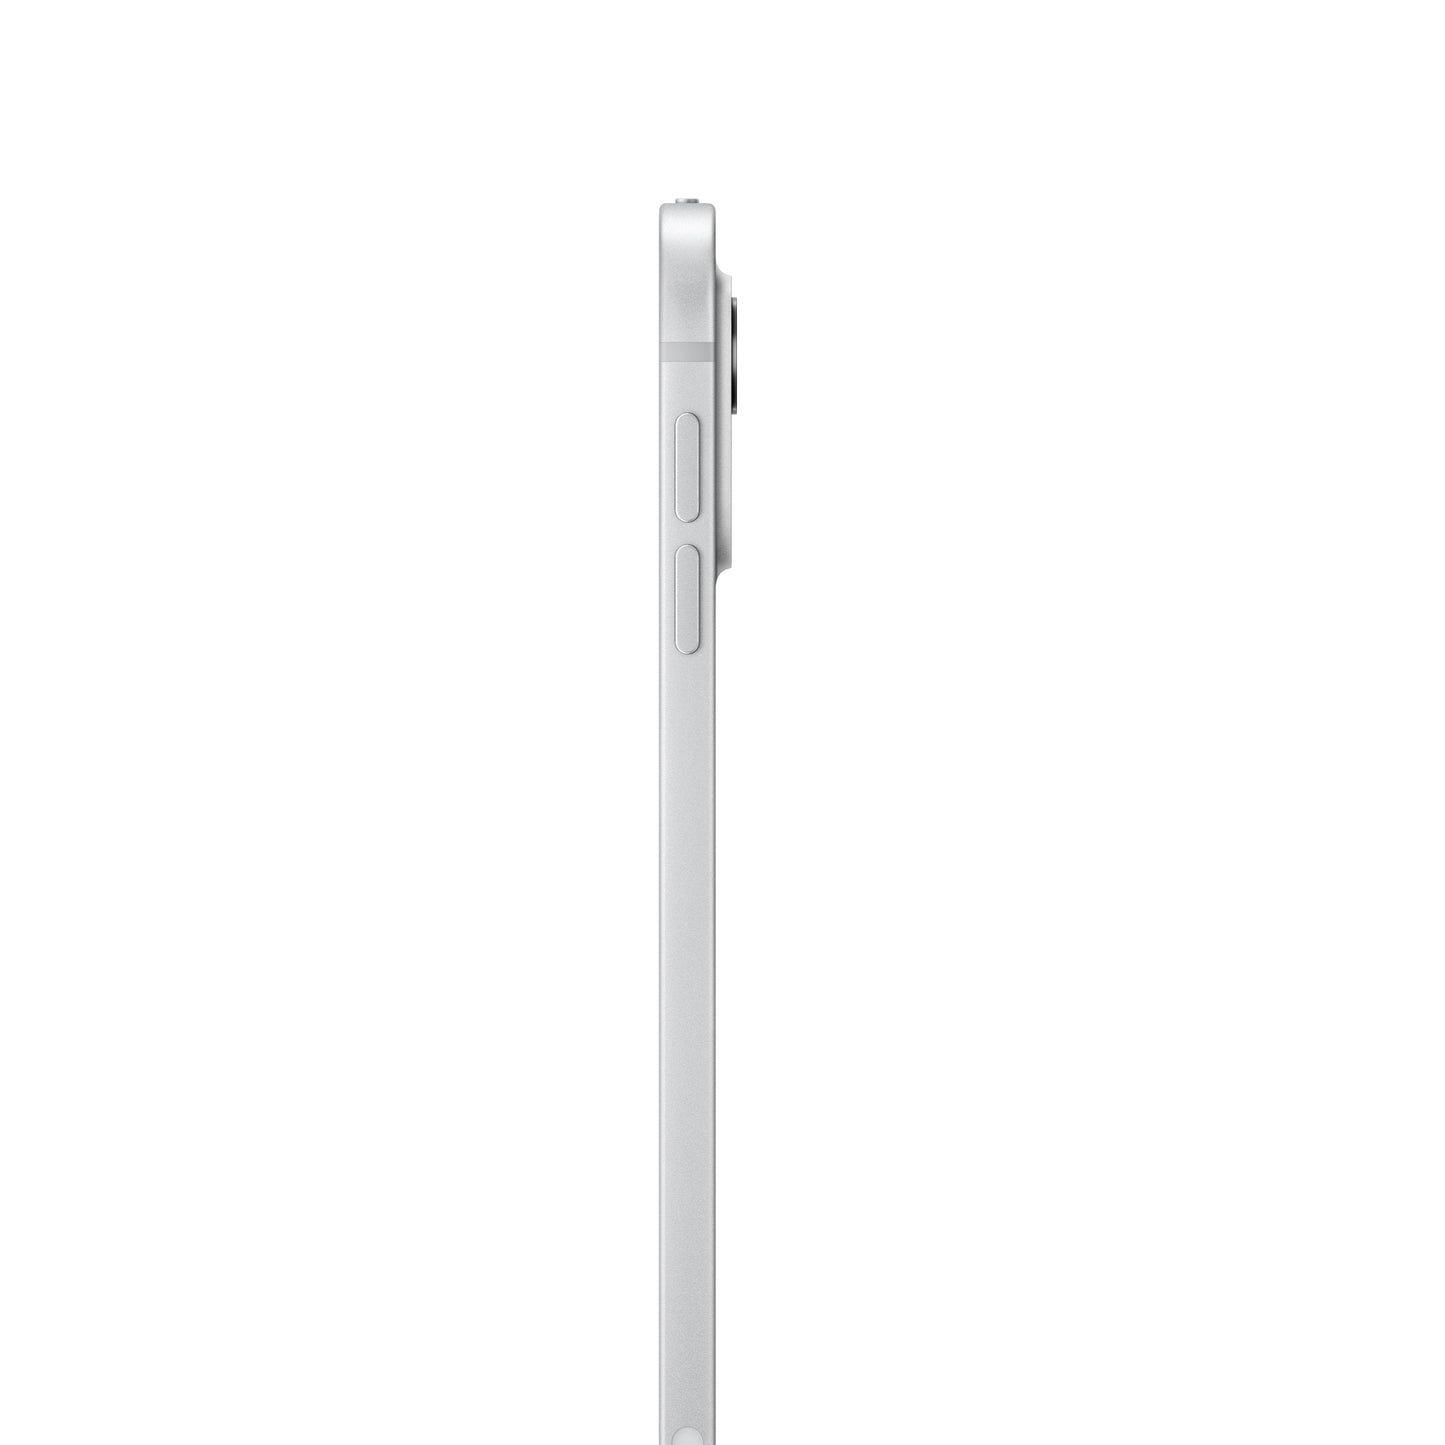 11-inch iPad Pro Wi-Fi + Cellular 512GB Standard Glass - Silver (M4)